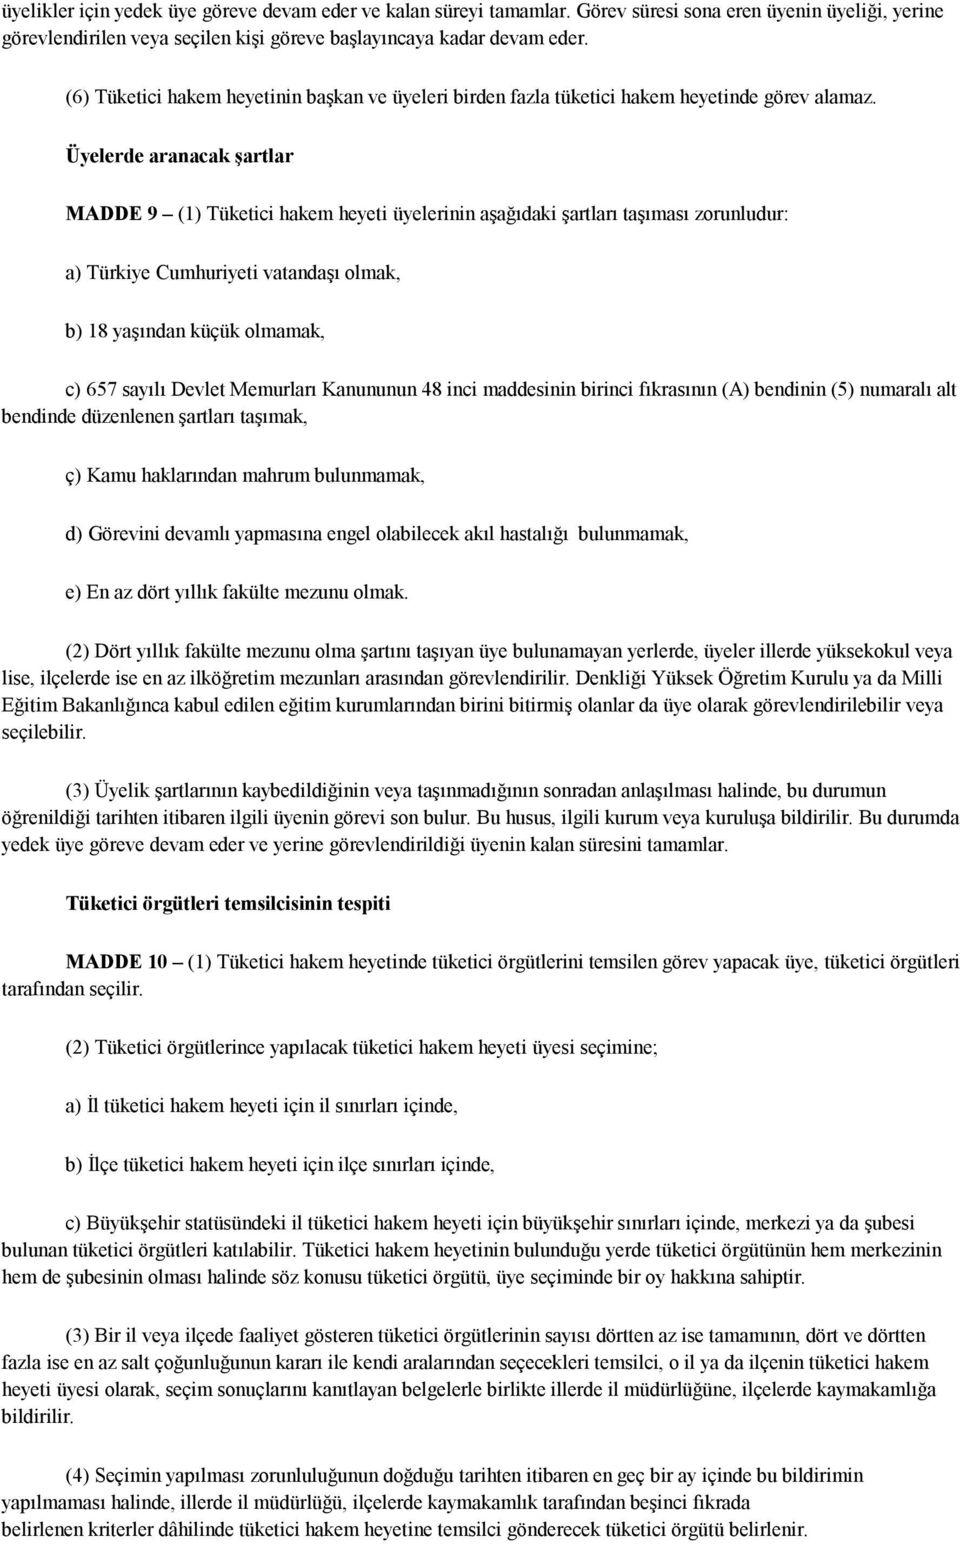 Üyelerde aranacak şartlar MADDE 9 (1) Tüketici hakem heyeti üyelerinin aşağıdaki şartları taşıması zorunludur: a) Türkiye Cumhuriyeti vatandaşı olmak, b) 18 yaşından küçük olmamak, c) 657 sayılı